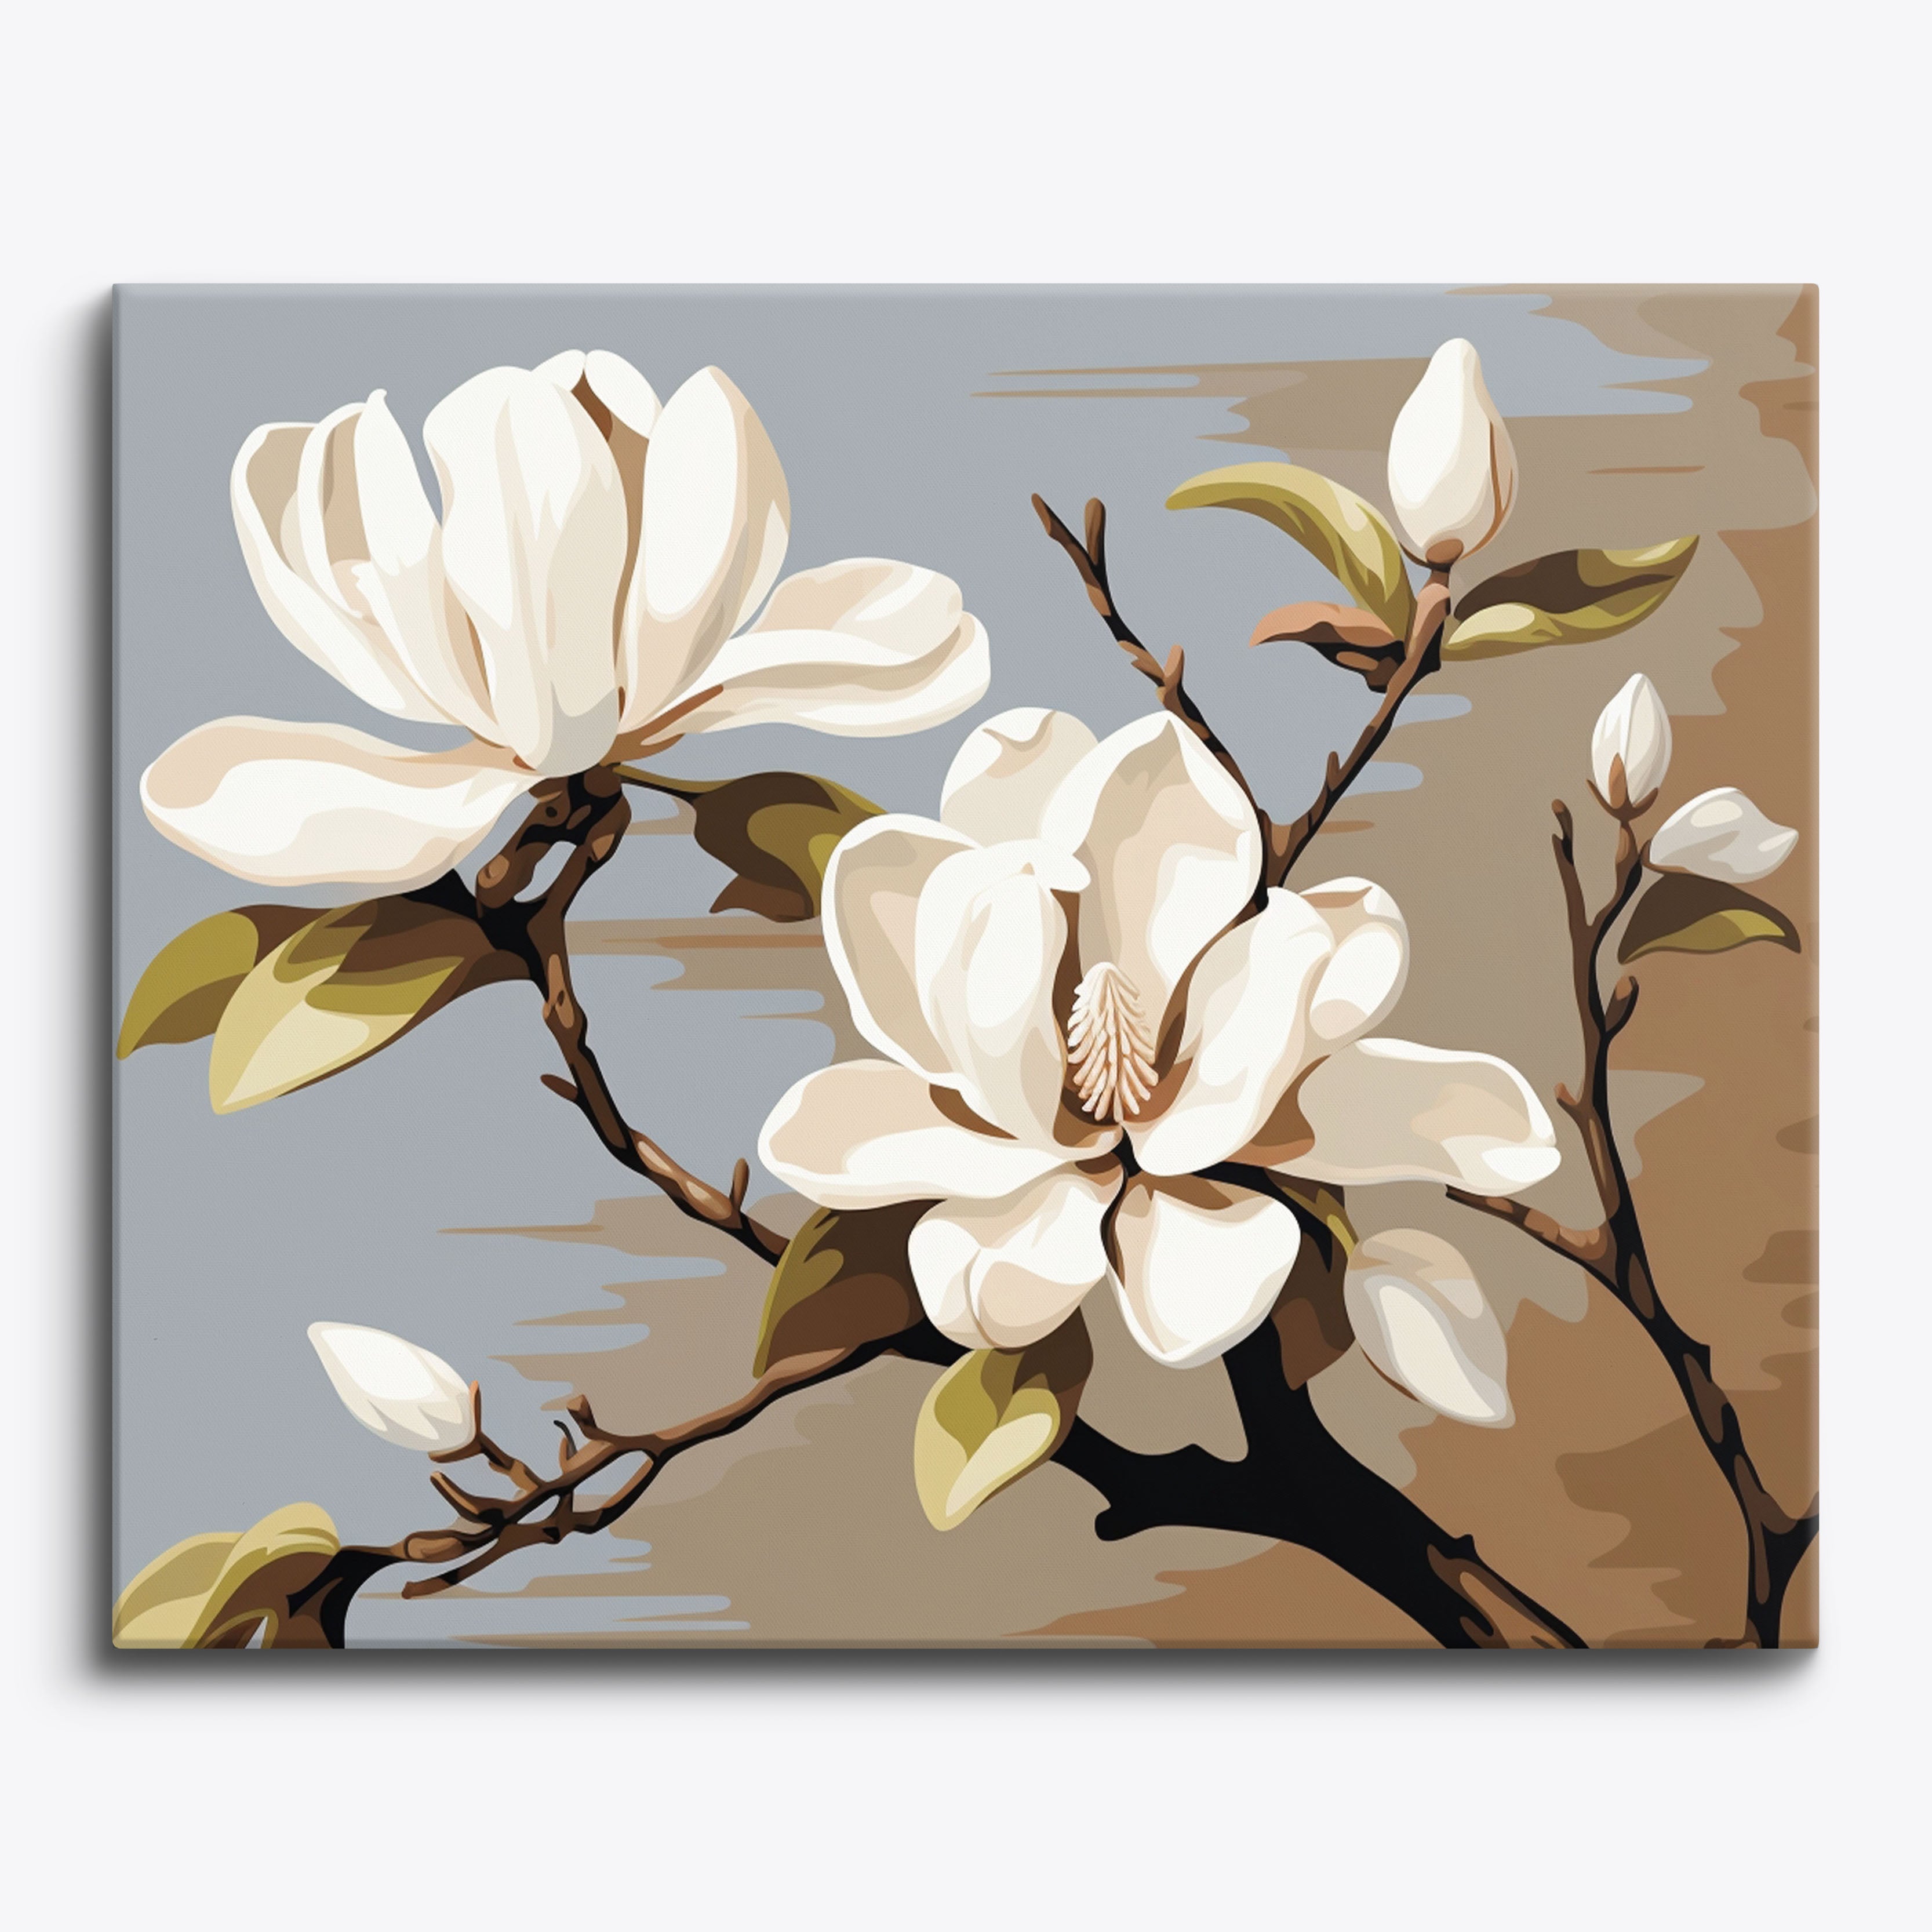 Serenity Blossom No Frame / 24 colors